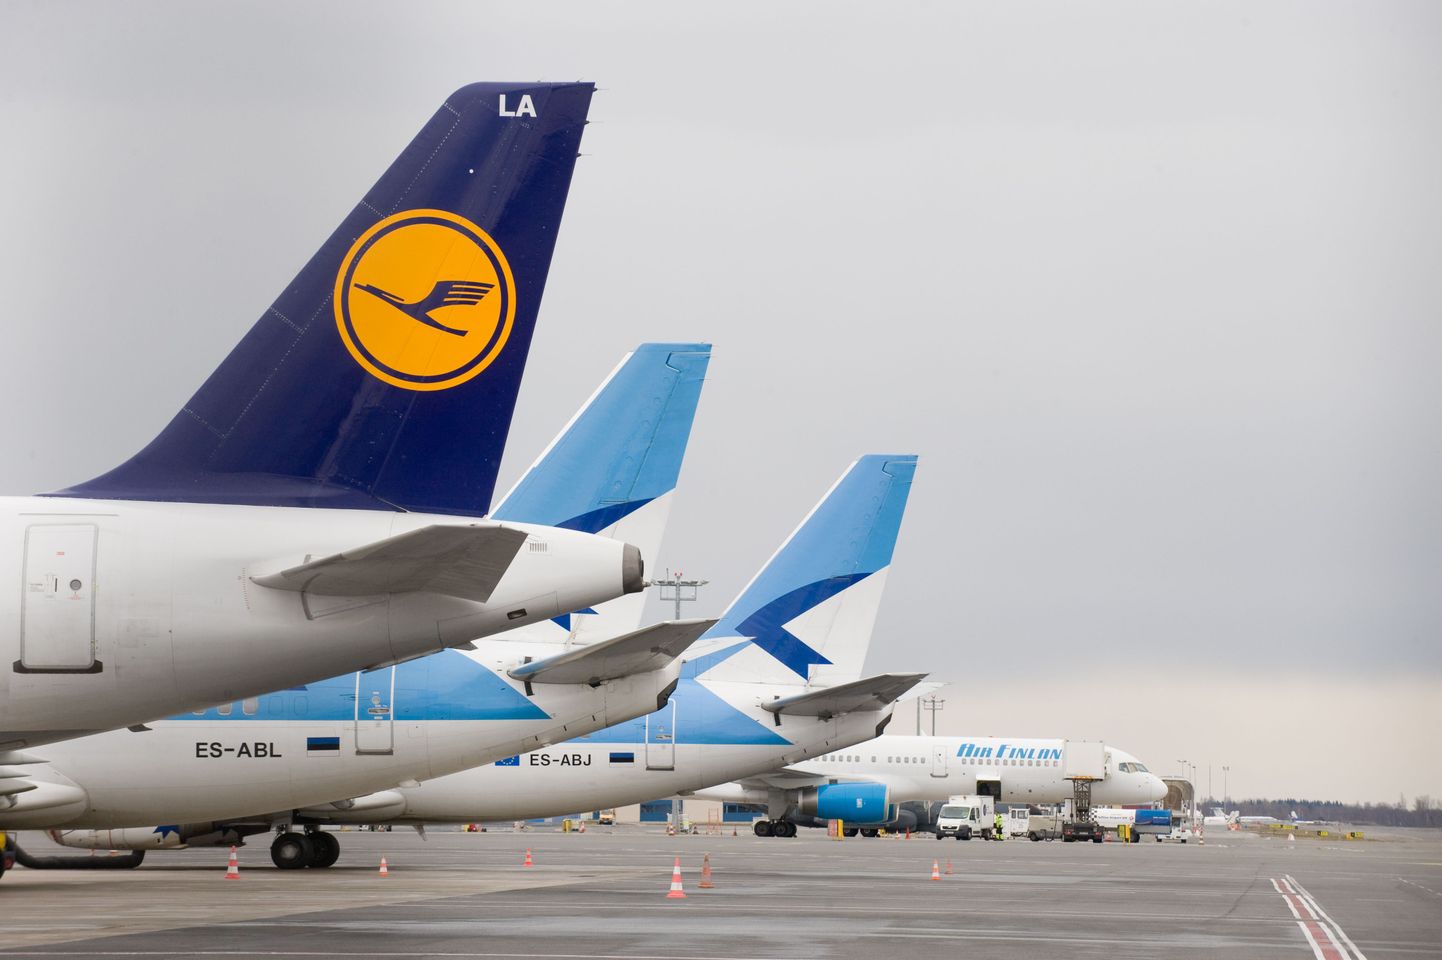 Lennuühendustelt on Eesti 139 riigi konkurentsis 125. kohal.